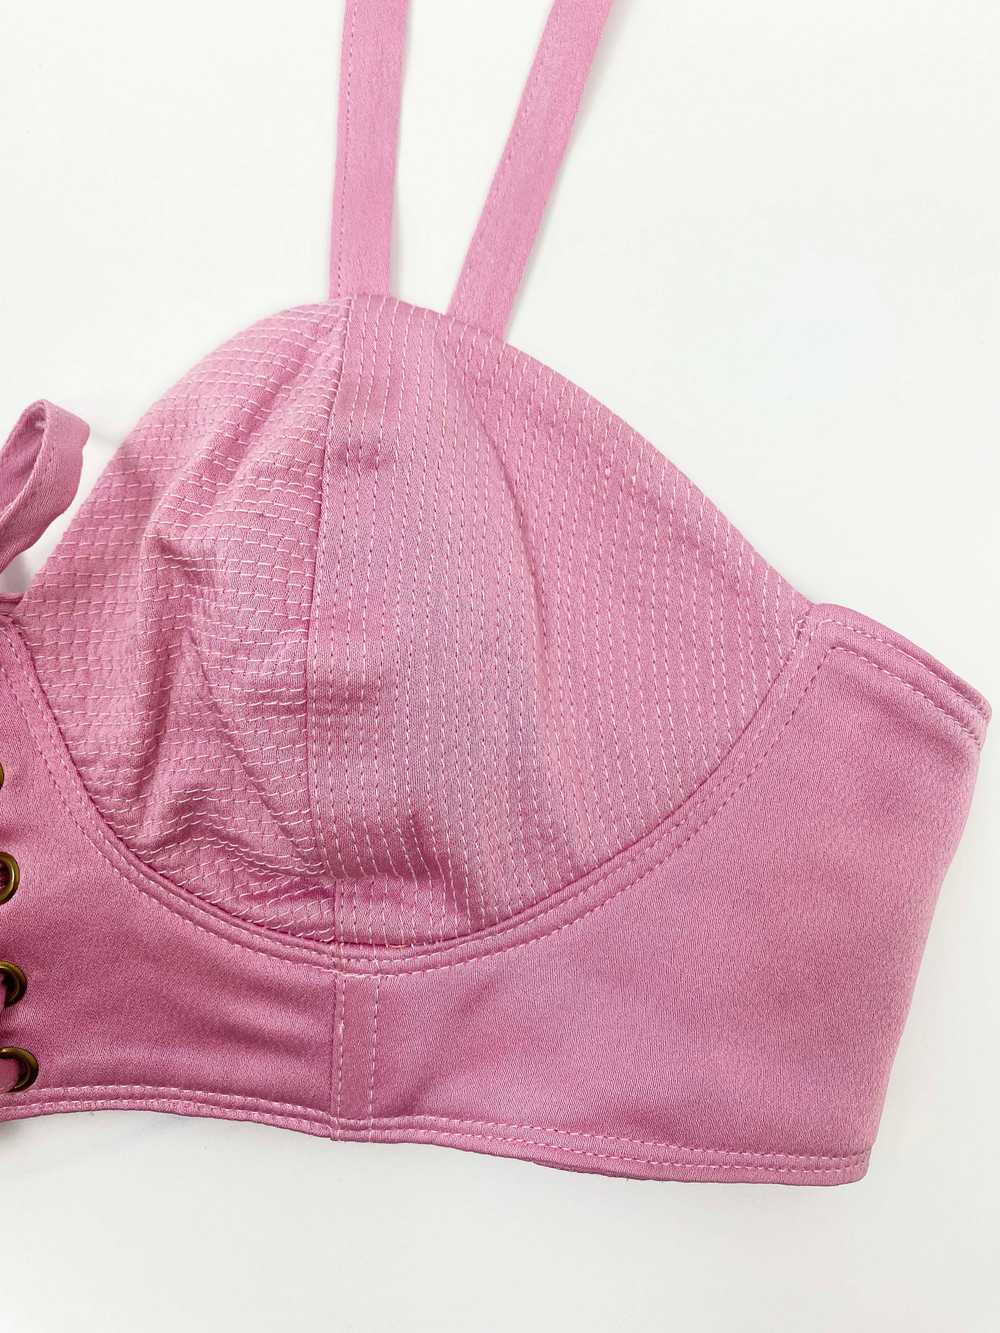 Versus Gianni Versace 90s pink bustier - image 3